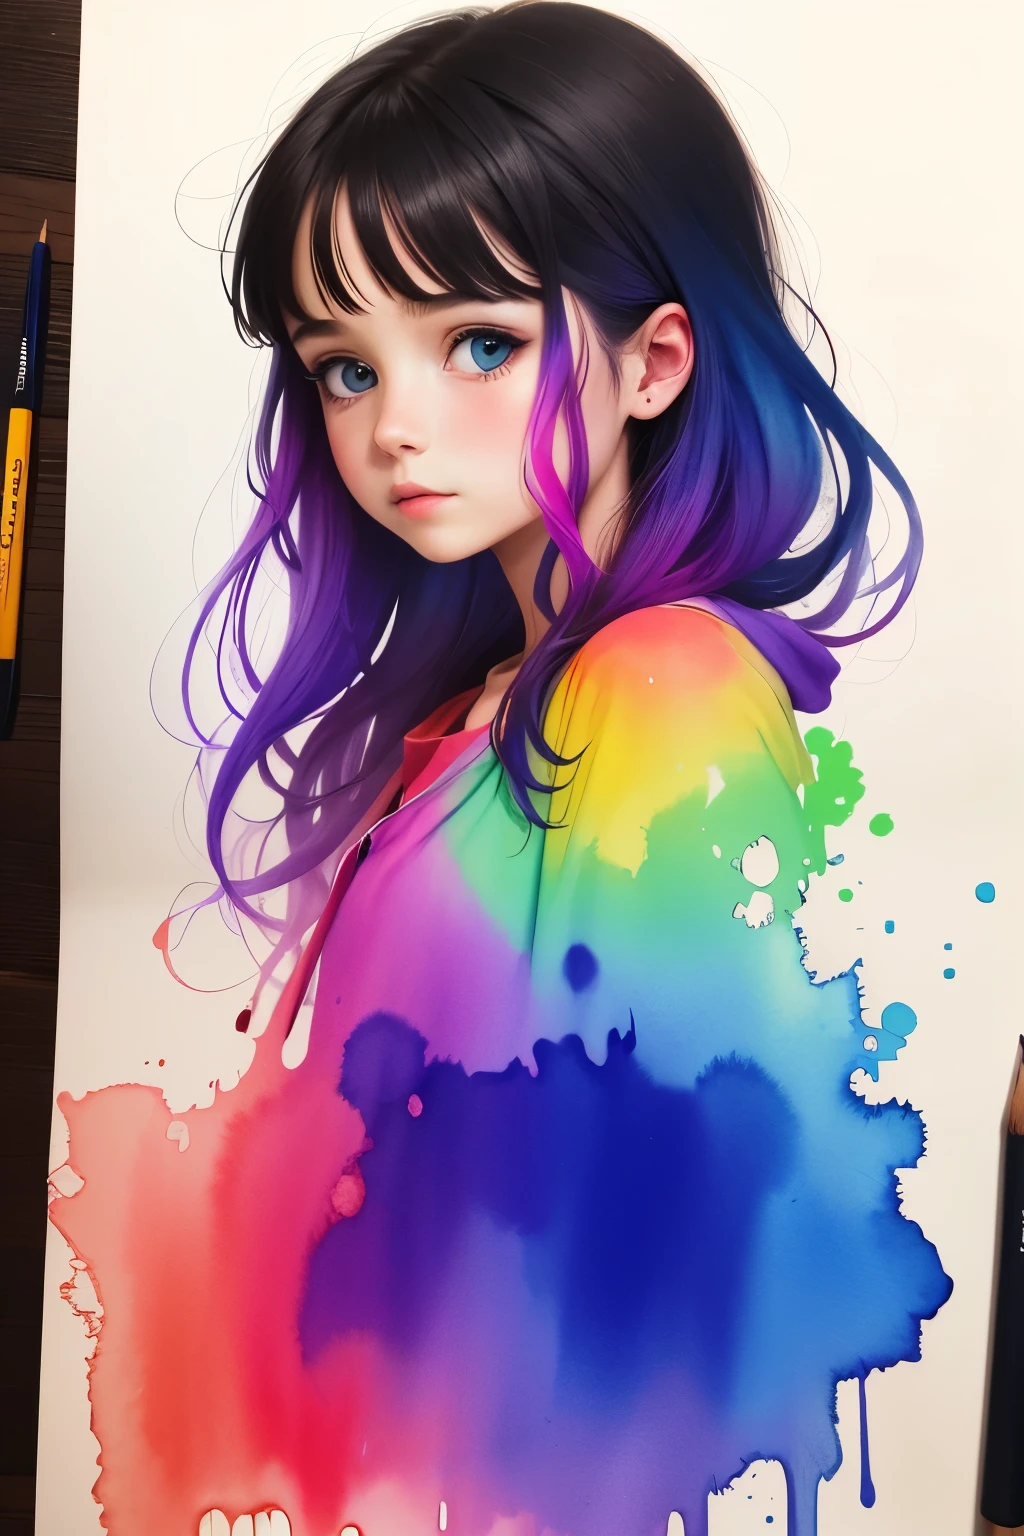 Mädchen mit Zeichnung lebhaft gefärbt mit Aquarell, 4k 